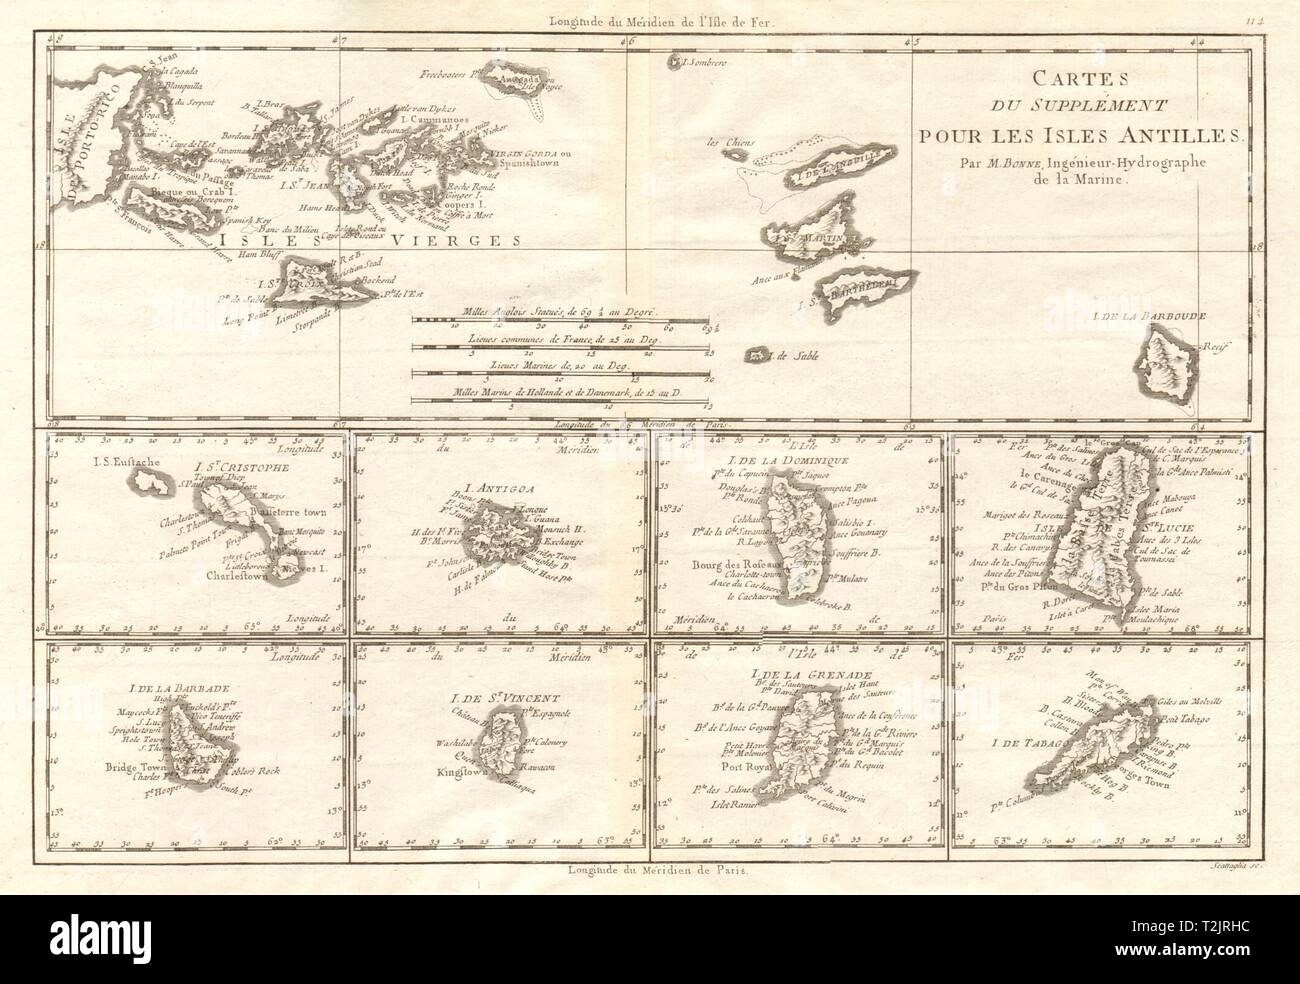 Cartes de supplément pour les Isles Antilles. West Indies Islands BONNE 1790 map Stock Photo